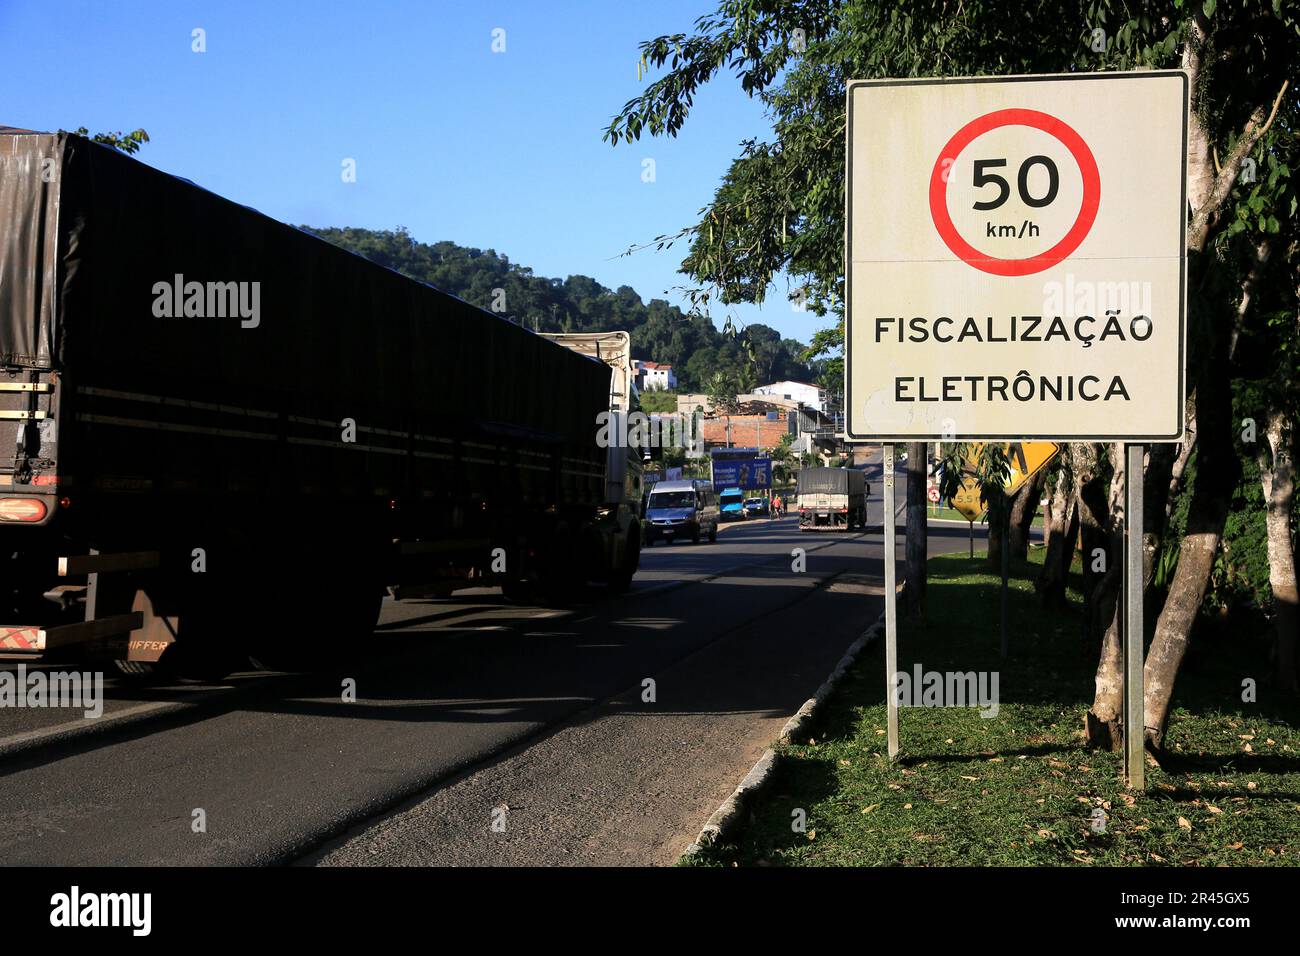 gandu, bahia, brasilien - 19. Mai 2023: Die Ampeltafel zeigt eine Geschwindigkeit von 50 km/h mit Radarkamera auf der Bundesautobahn br 101 in der Stadt gandu an. Stockfoto